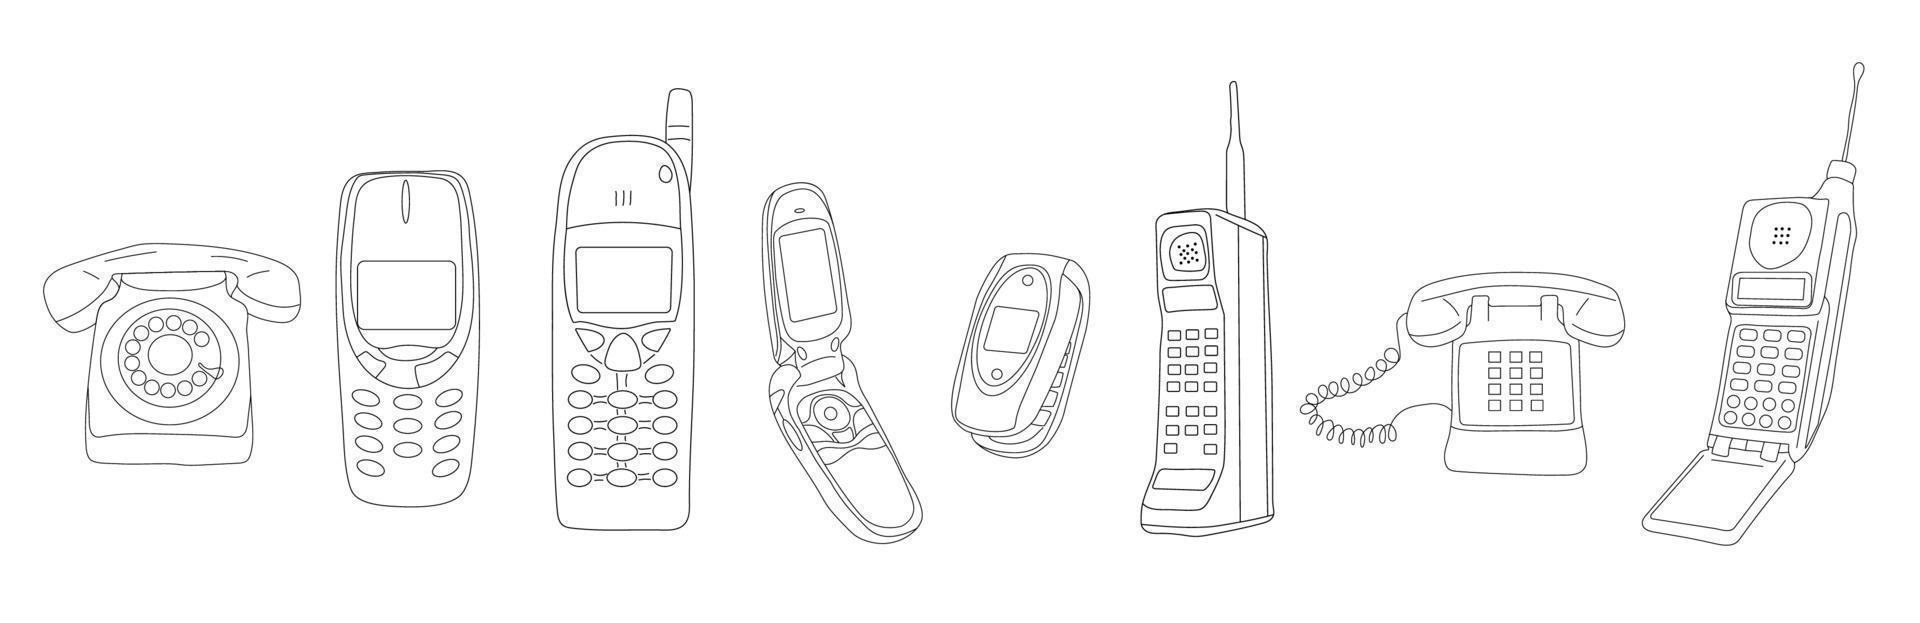 vetor vintage meios de conjunto de desenho de linha de comunicação. telefones antigos de coleção preto e branco retrô